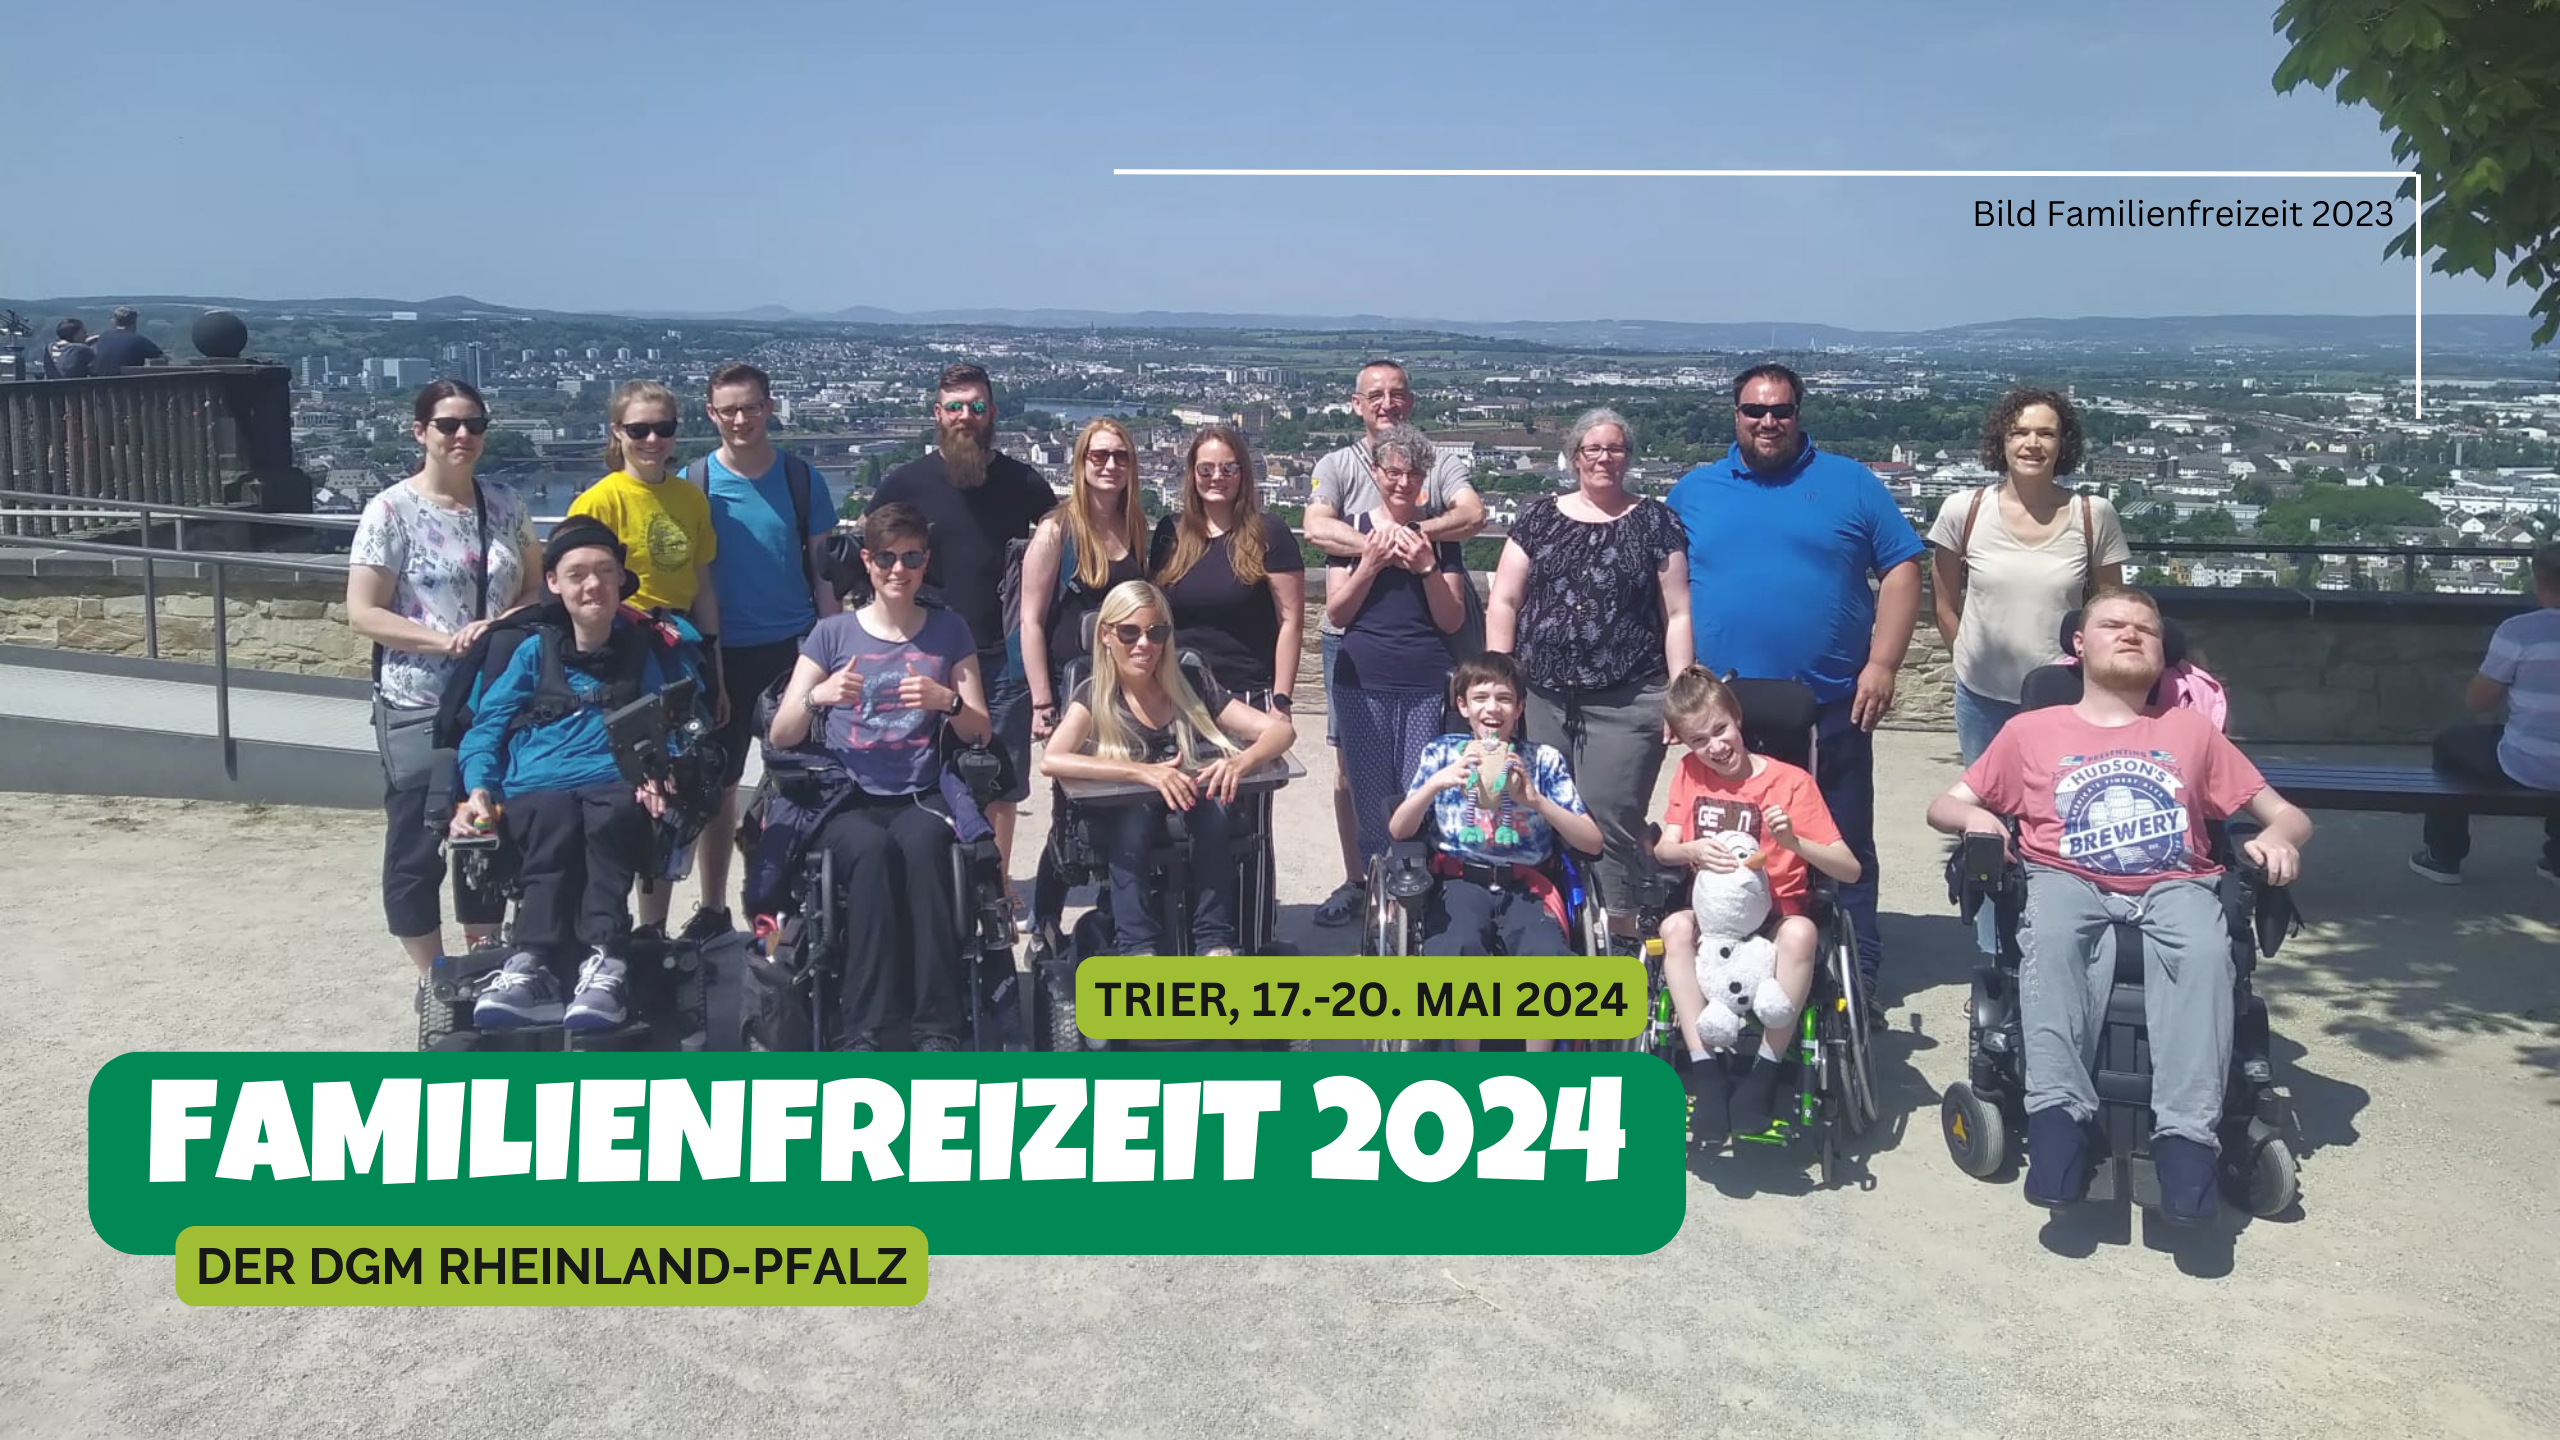 Gruppenbild der Teilnehmer der Familienfreizeit 2023 mit dem Schriftzug Familienfreizeit 2024 der DGM Rheinland-Pfalz, Trier, 17.-20.05.2024